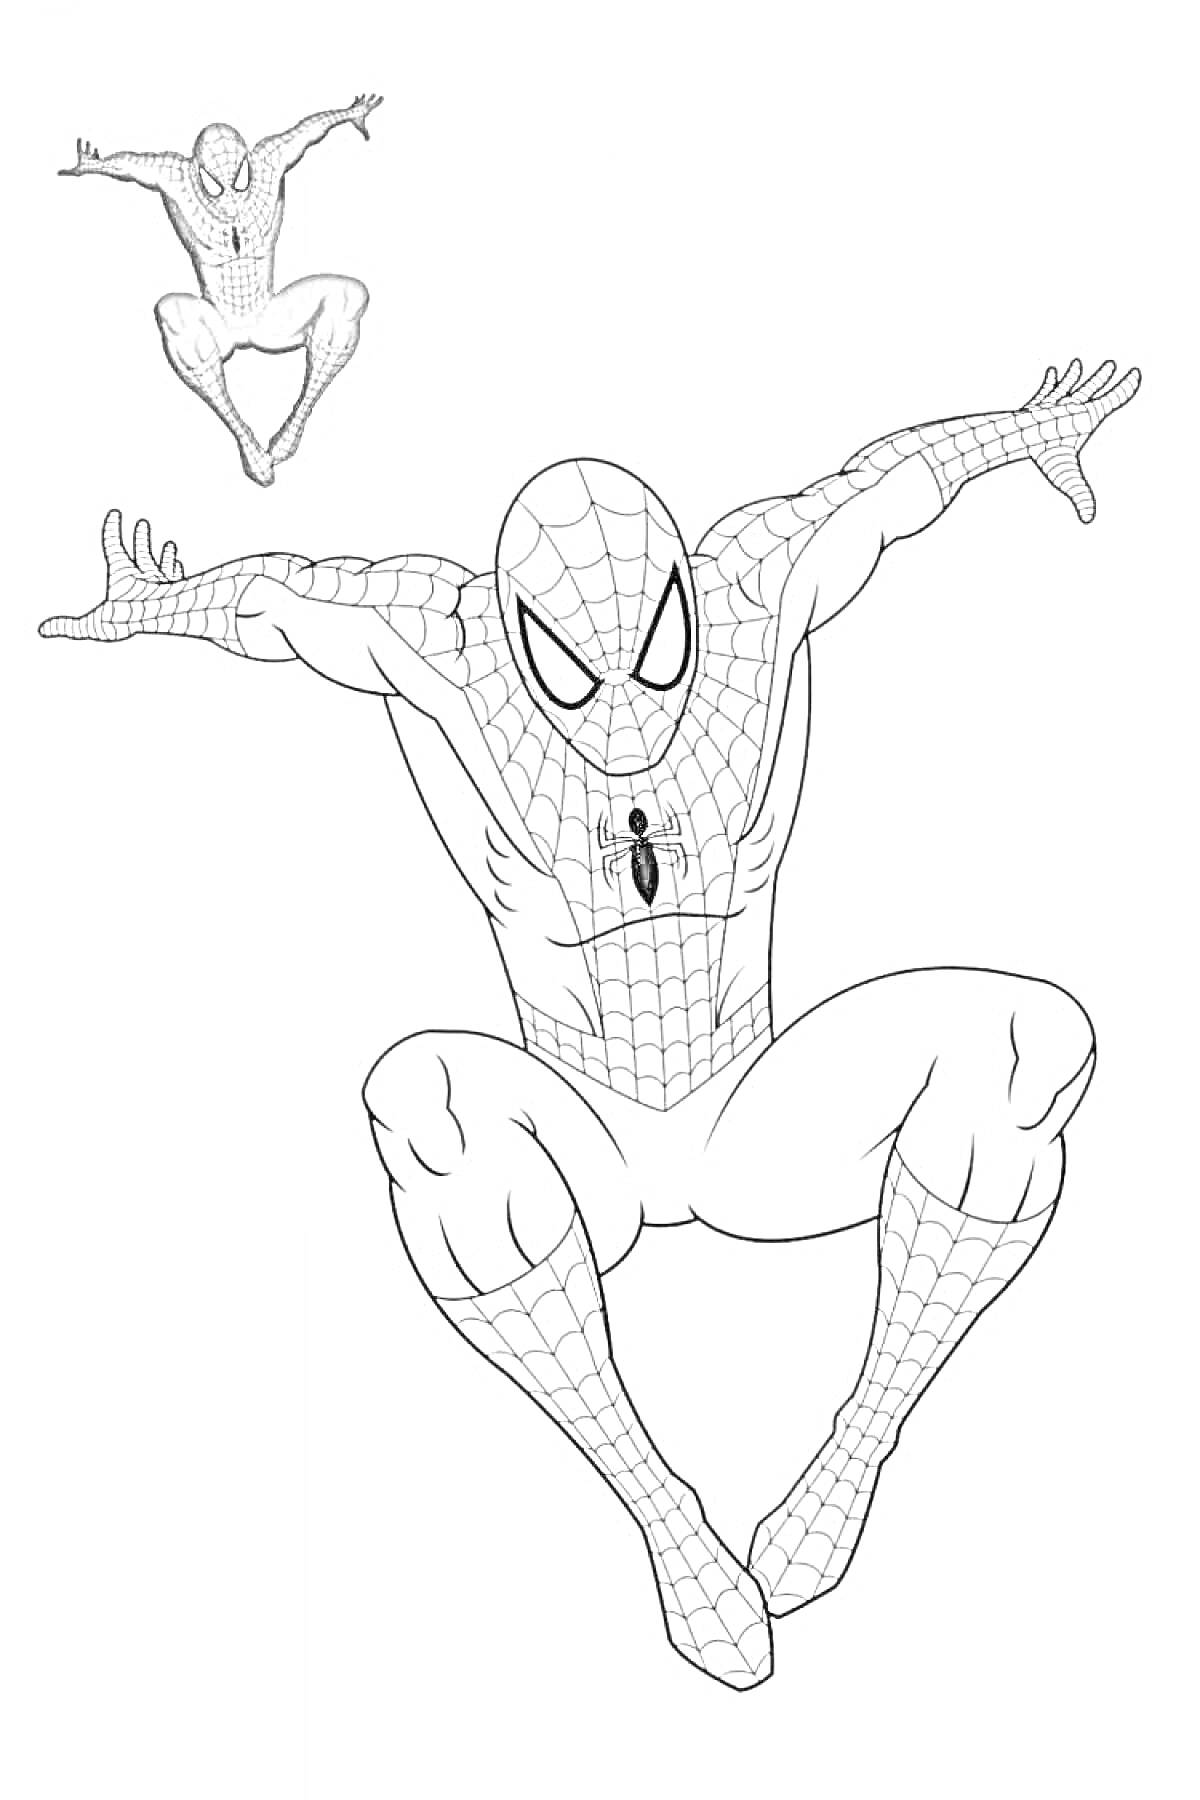 Раскраска Раскраска с изображением Человека-паука в прыжке с маленьким цветным Человеком-пауком в углу